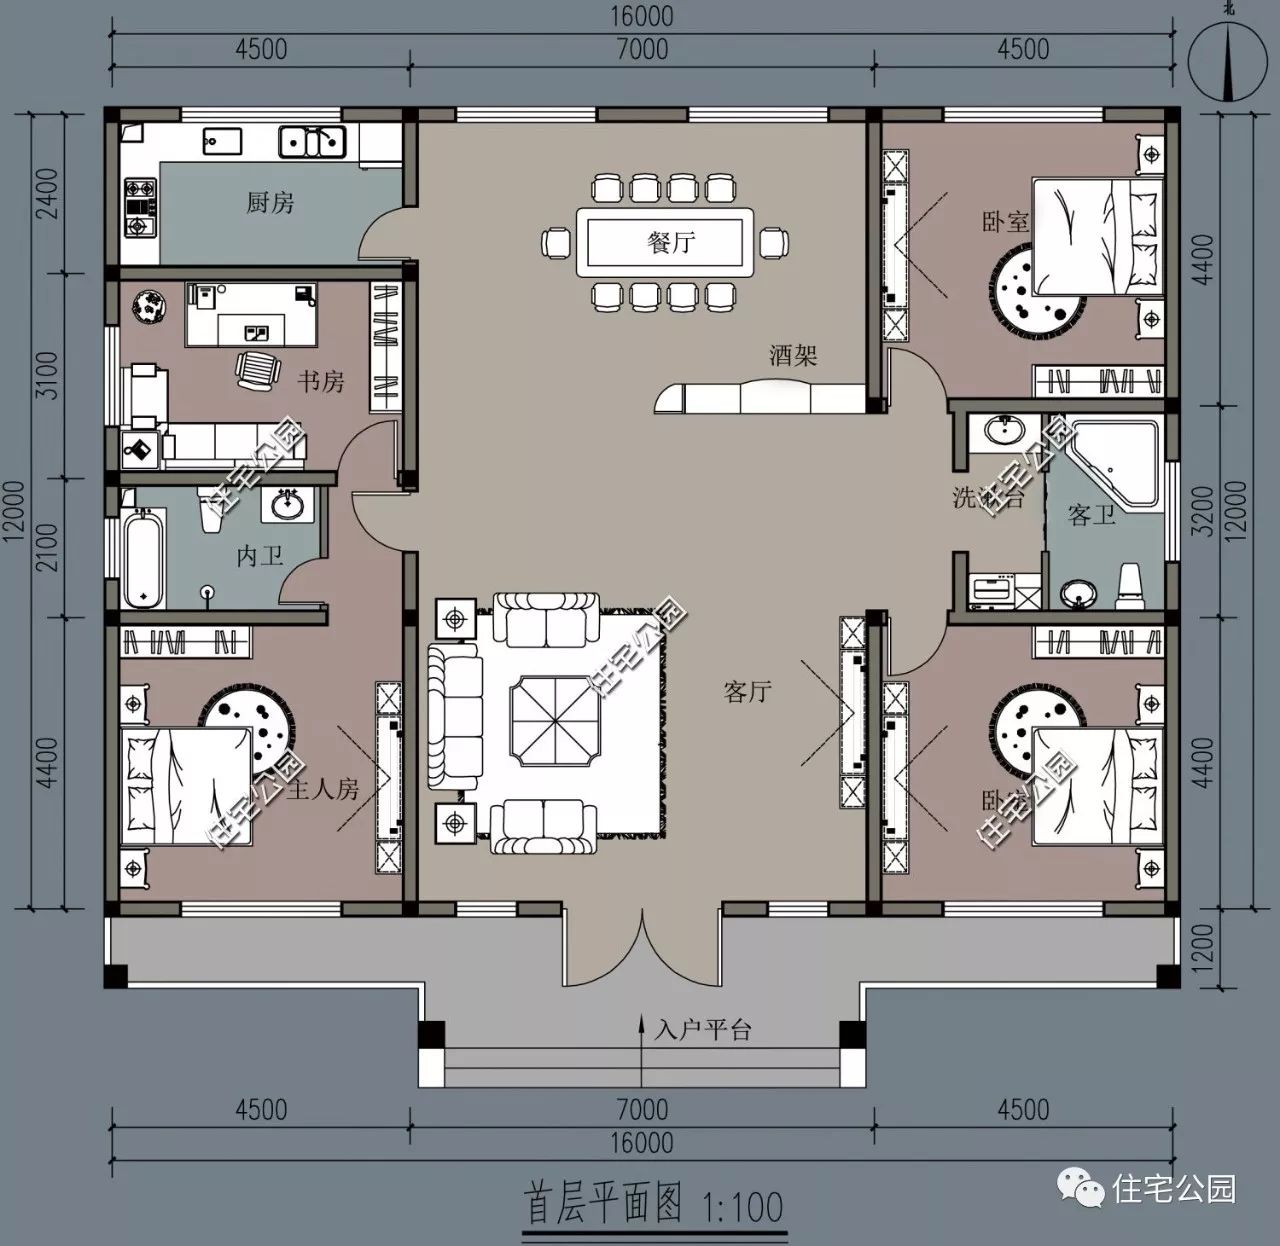 3室2厅,12x16米精致平层别墅(全图 预算 视频展示)